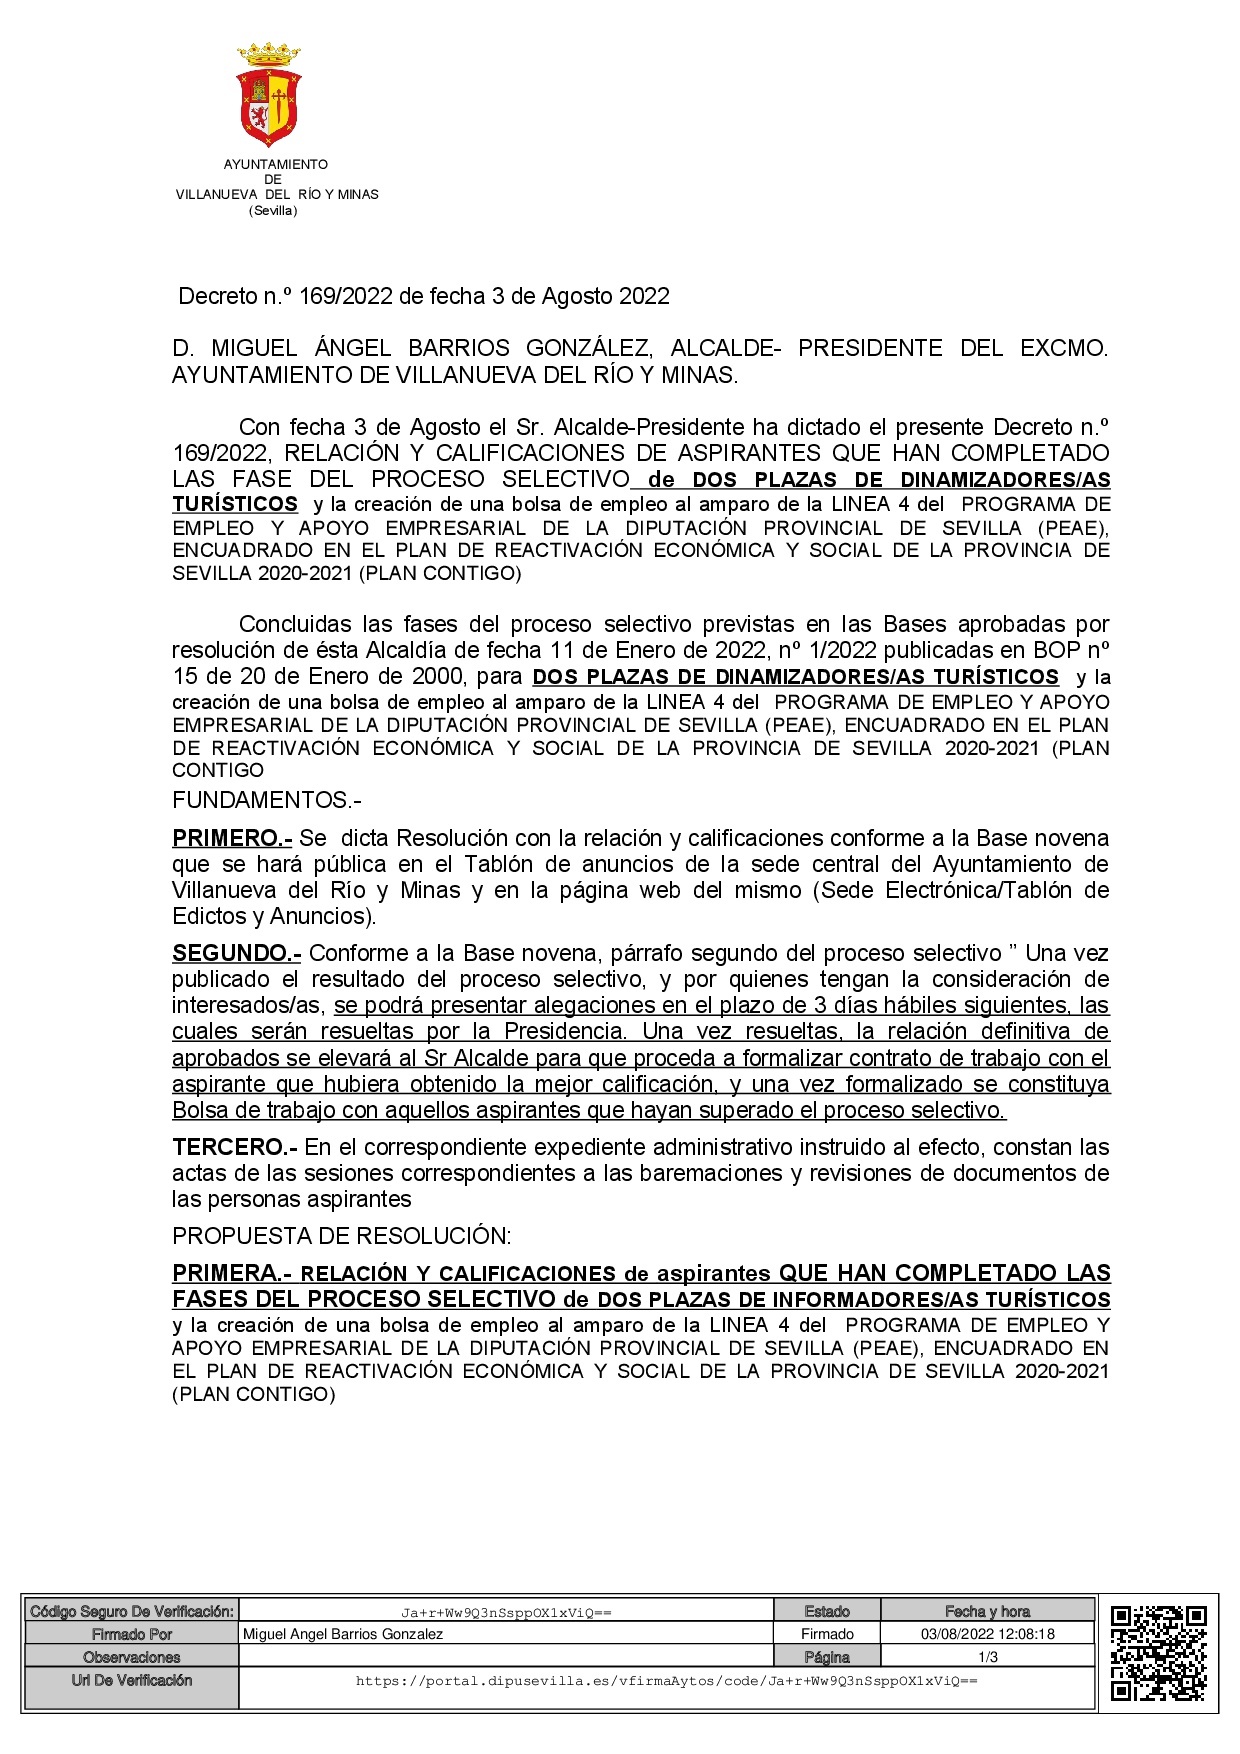 Decreto 169 Dinamizador RELACION Y CALIFICACIONES-001